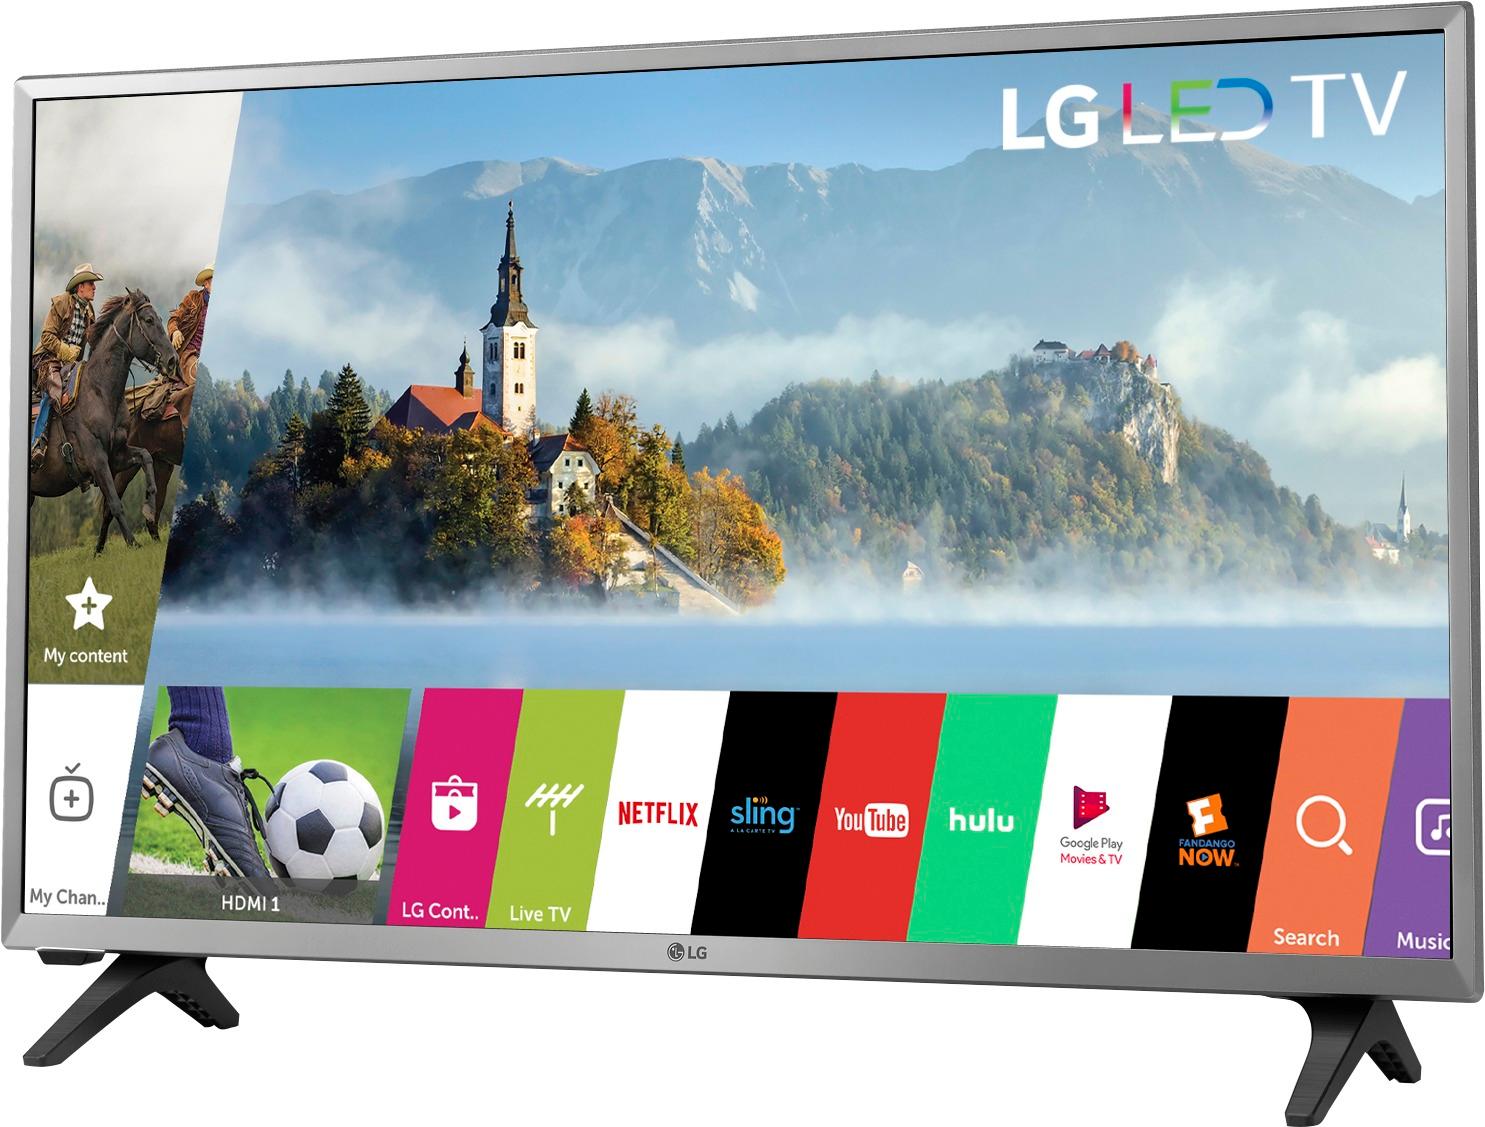 LG 32" Class LED Series 720p Smart HDTV 32LJ550M - Best Buy